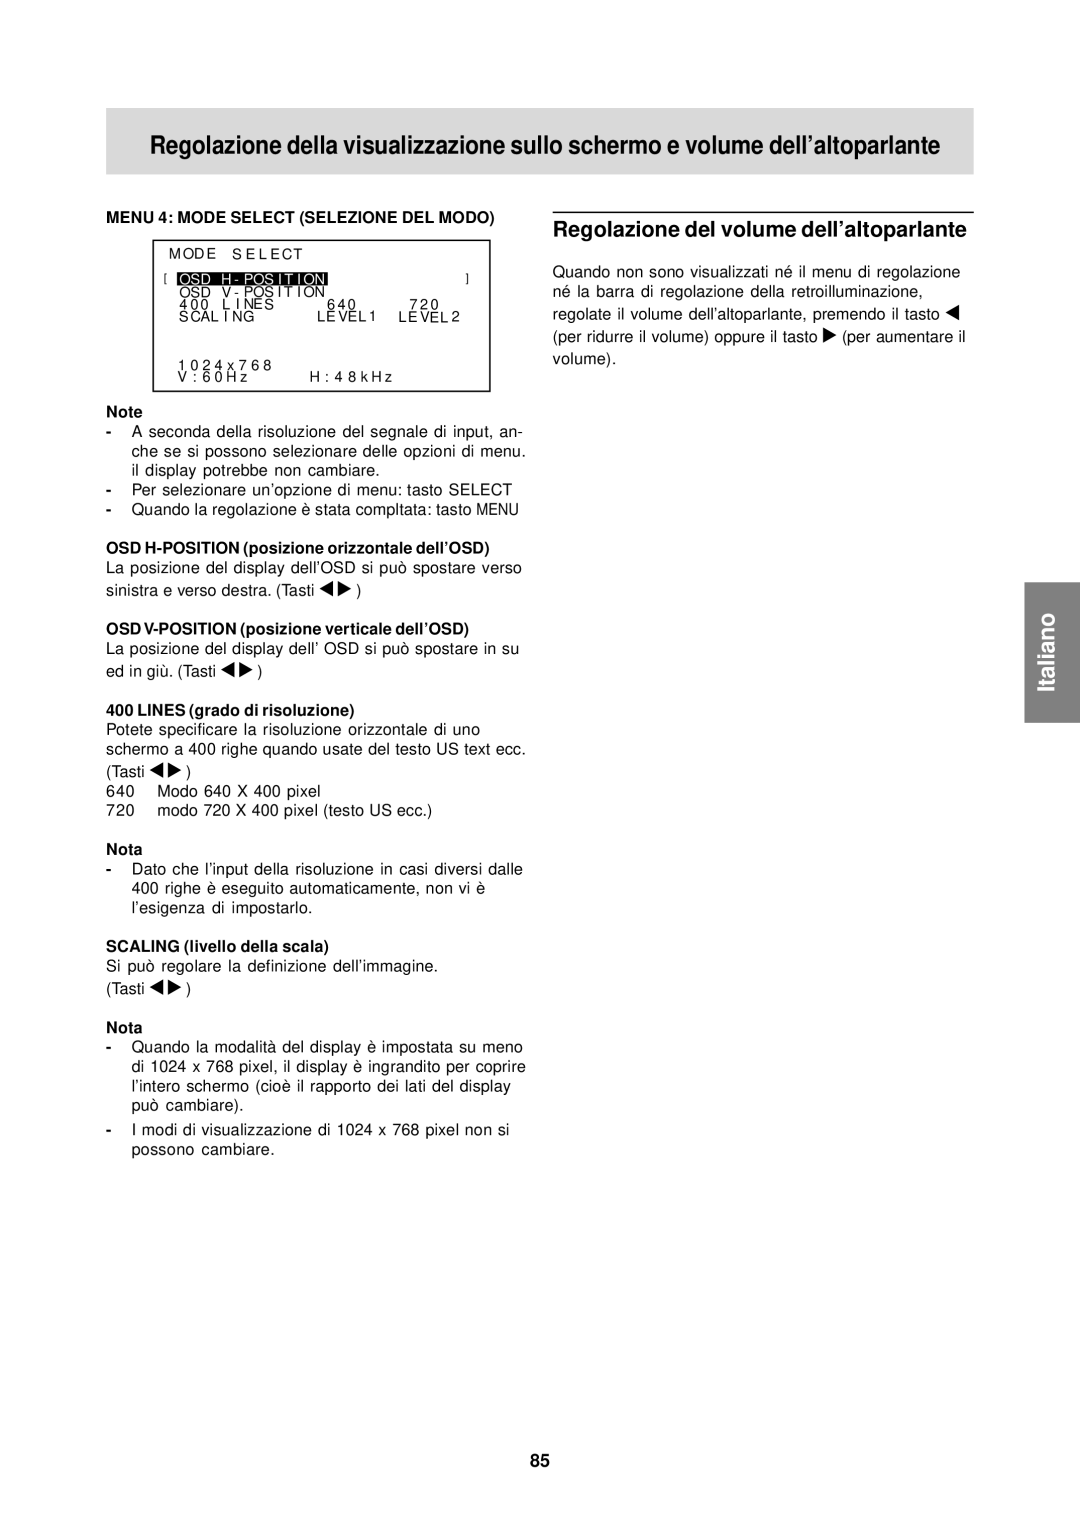 Sharp LL-T15S1 operation manual Regolazione del volume dell’altoparlante, OSD H-POSITION posizione orizzontale dell’OSD 